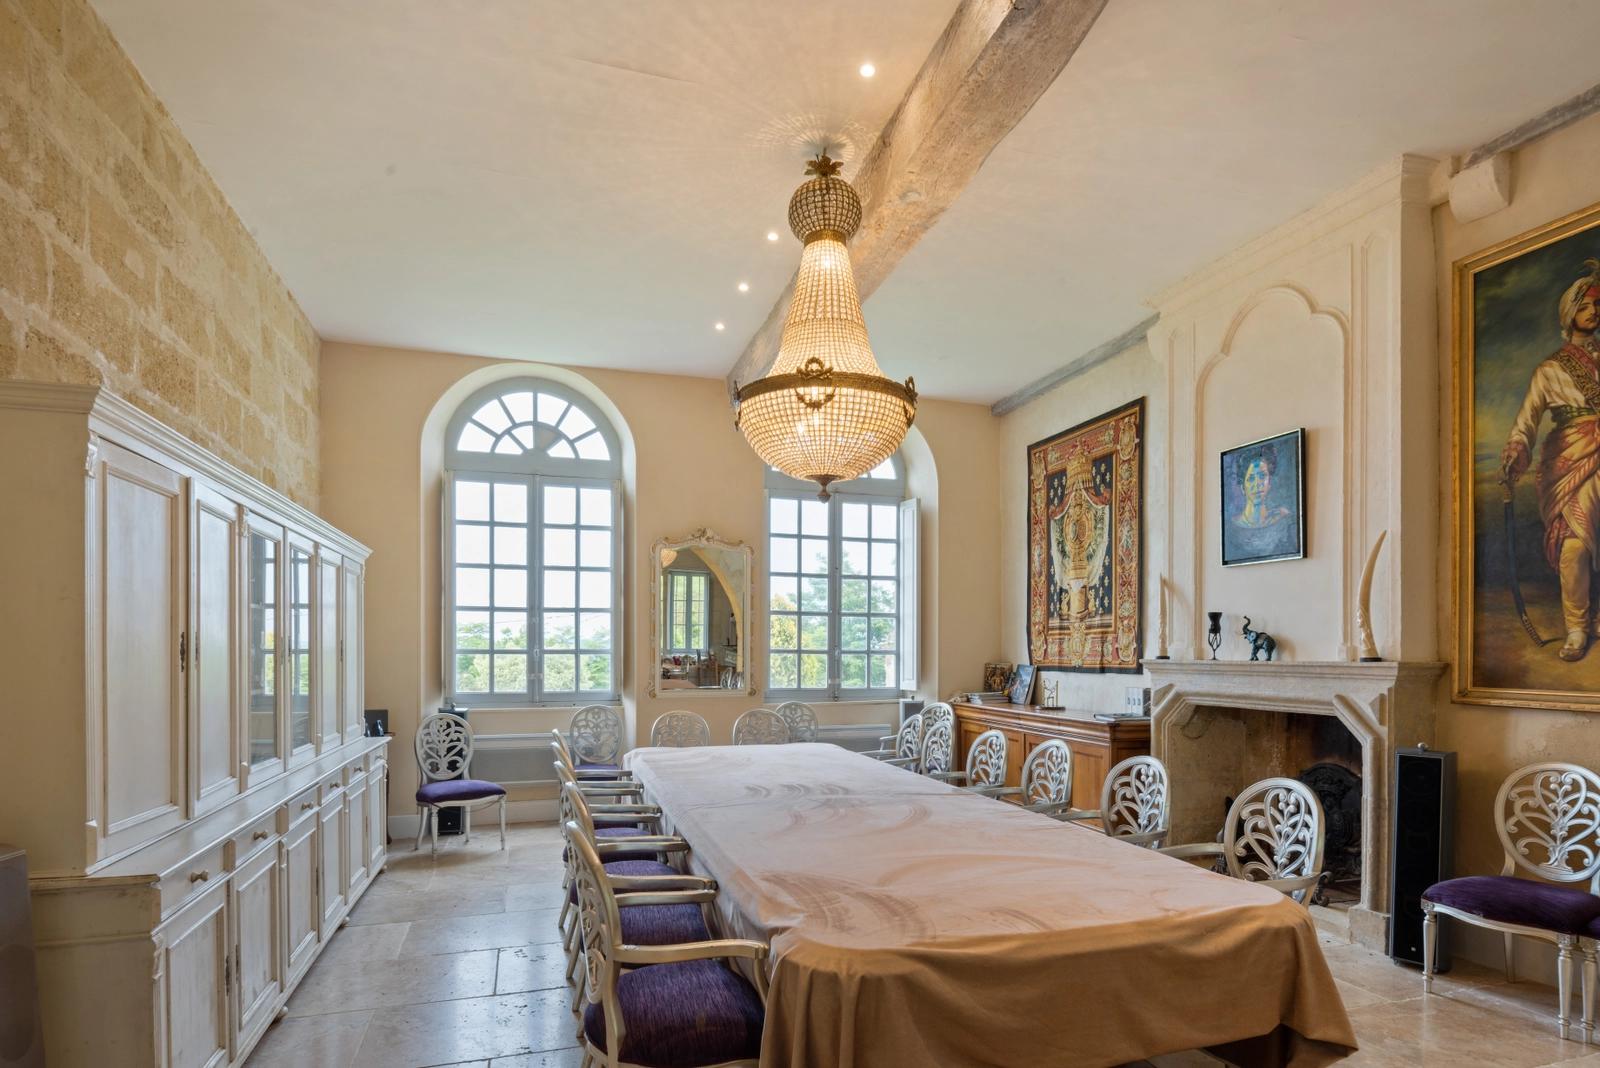 Dormitorio dentro Castillo del siglo XII, productor de vino - 0